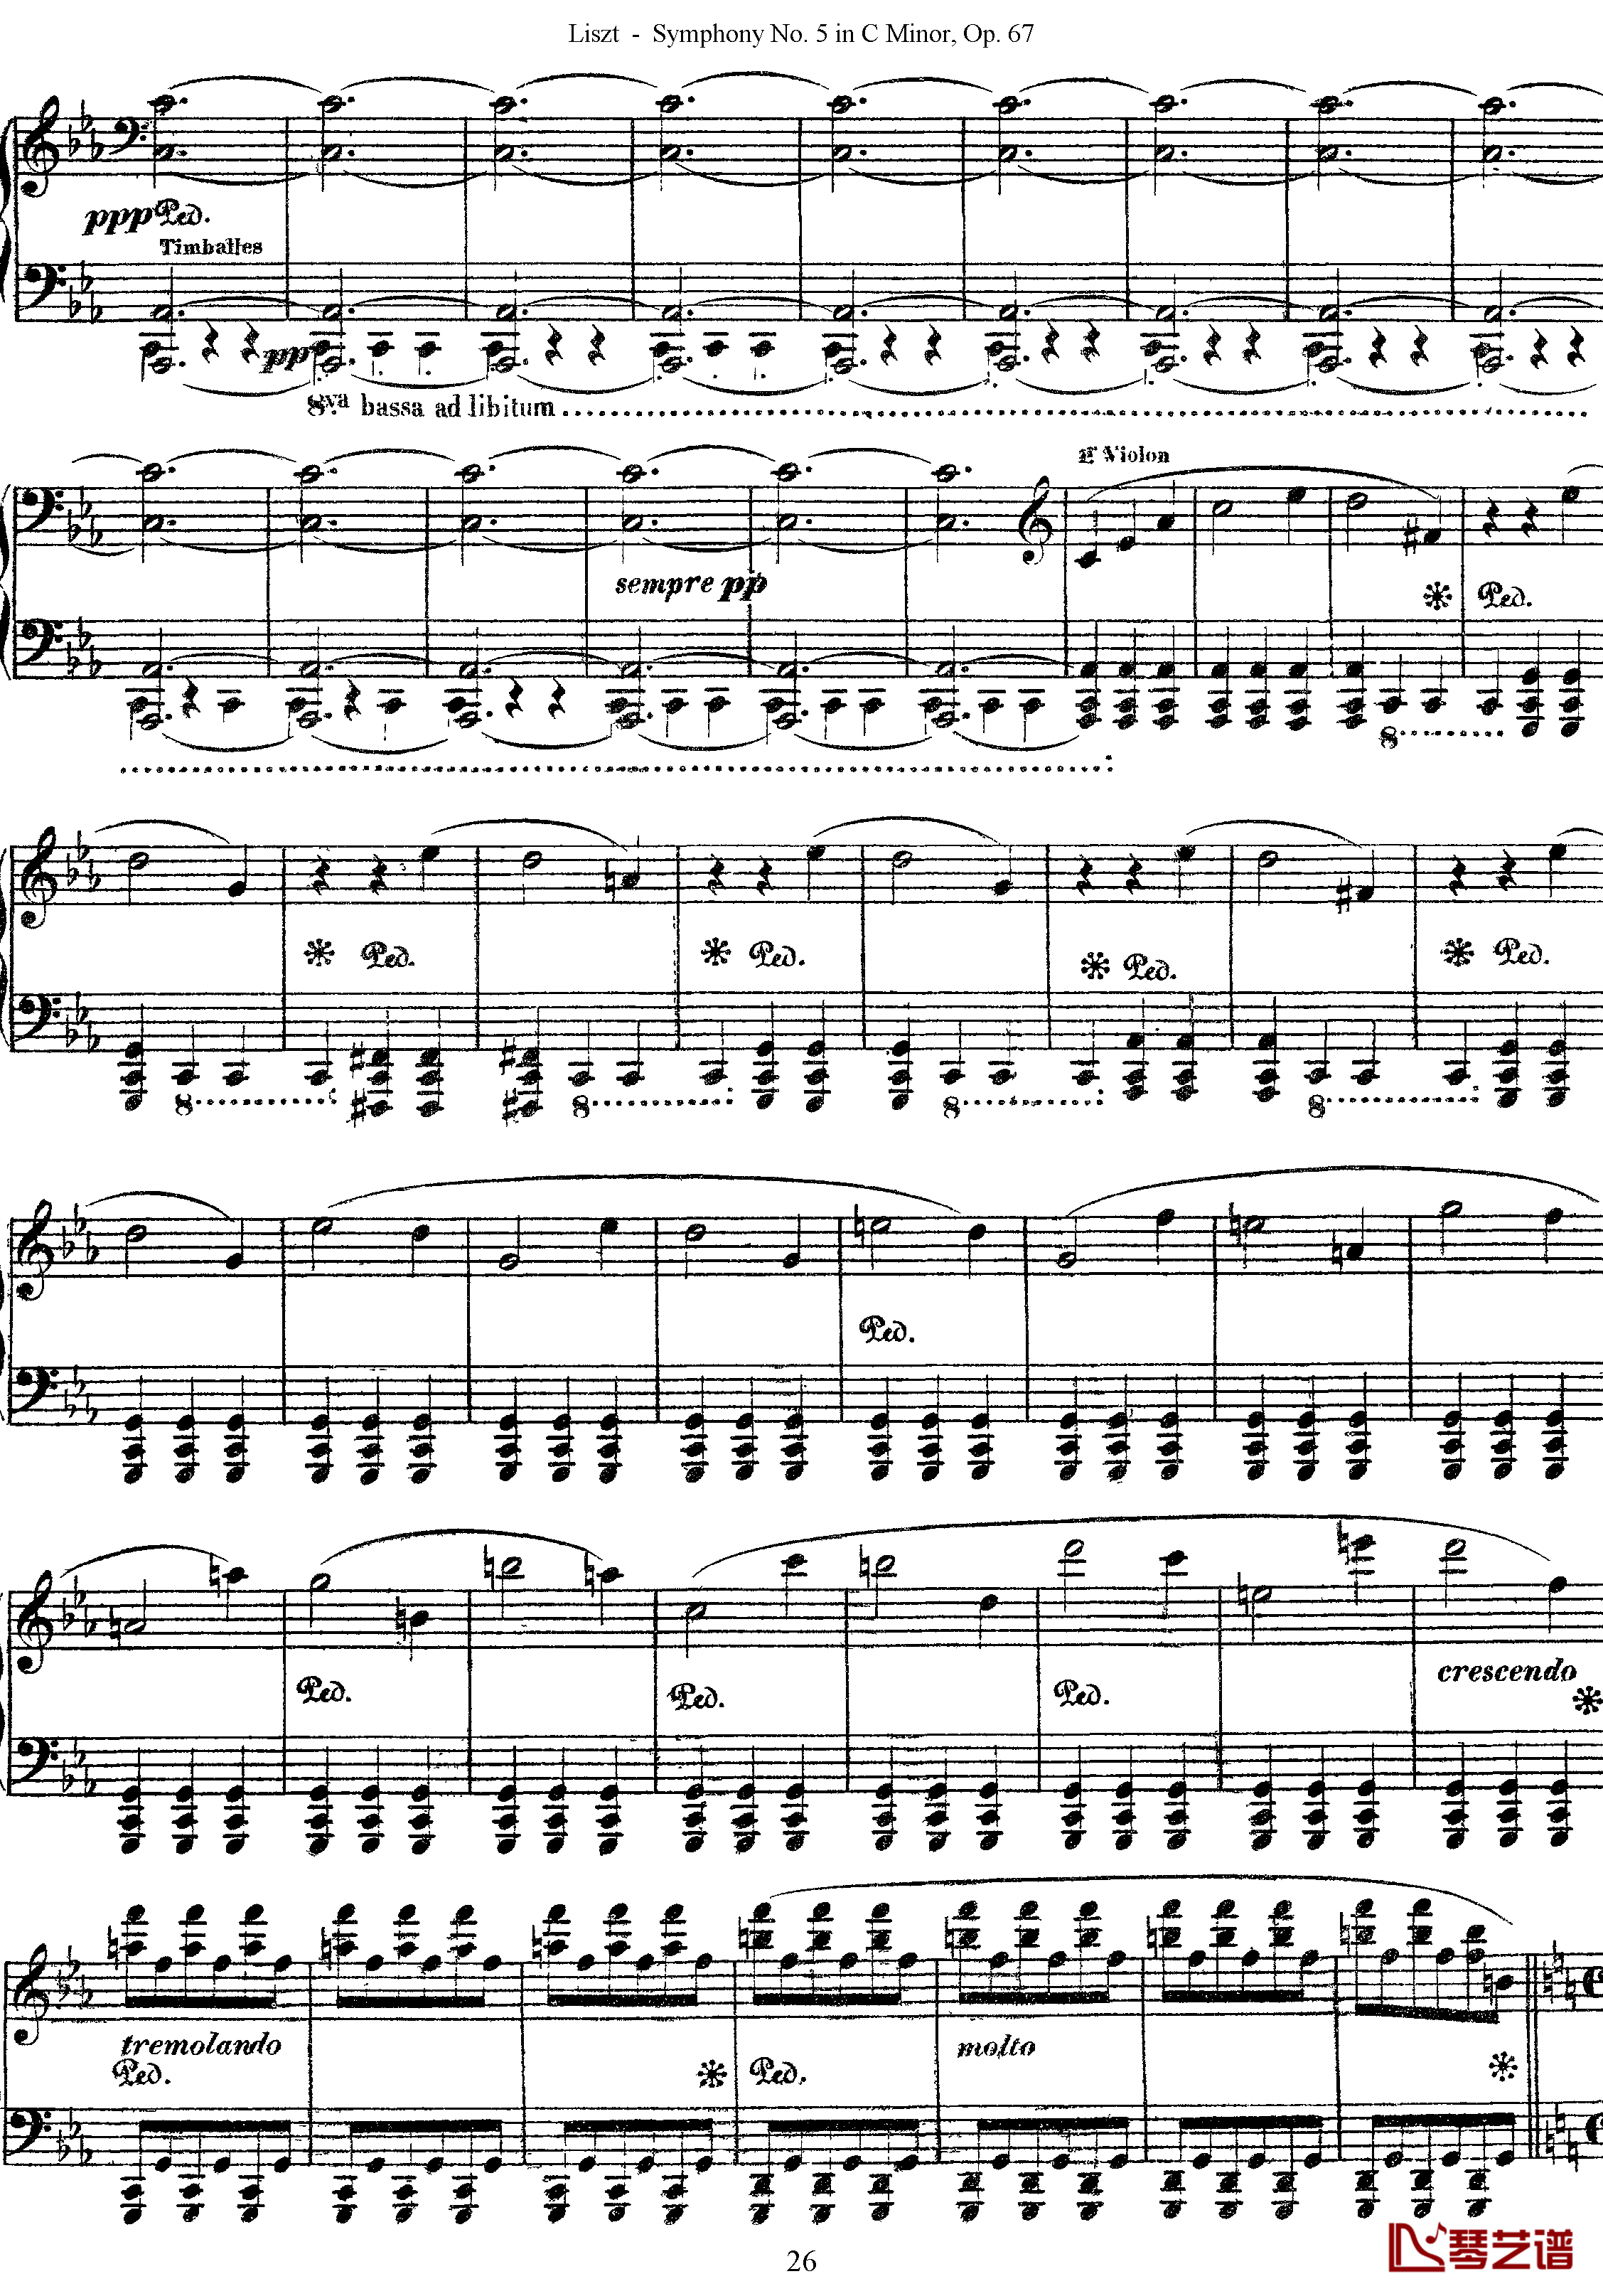 第五交响乐的钢琴曲钢琴谱-李斯特-李斯特改编自贝多芬26